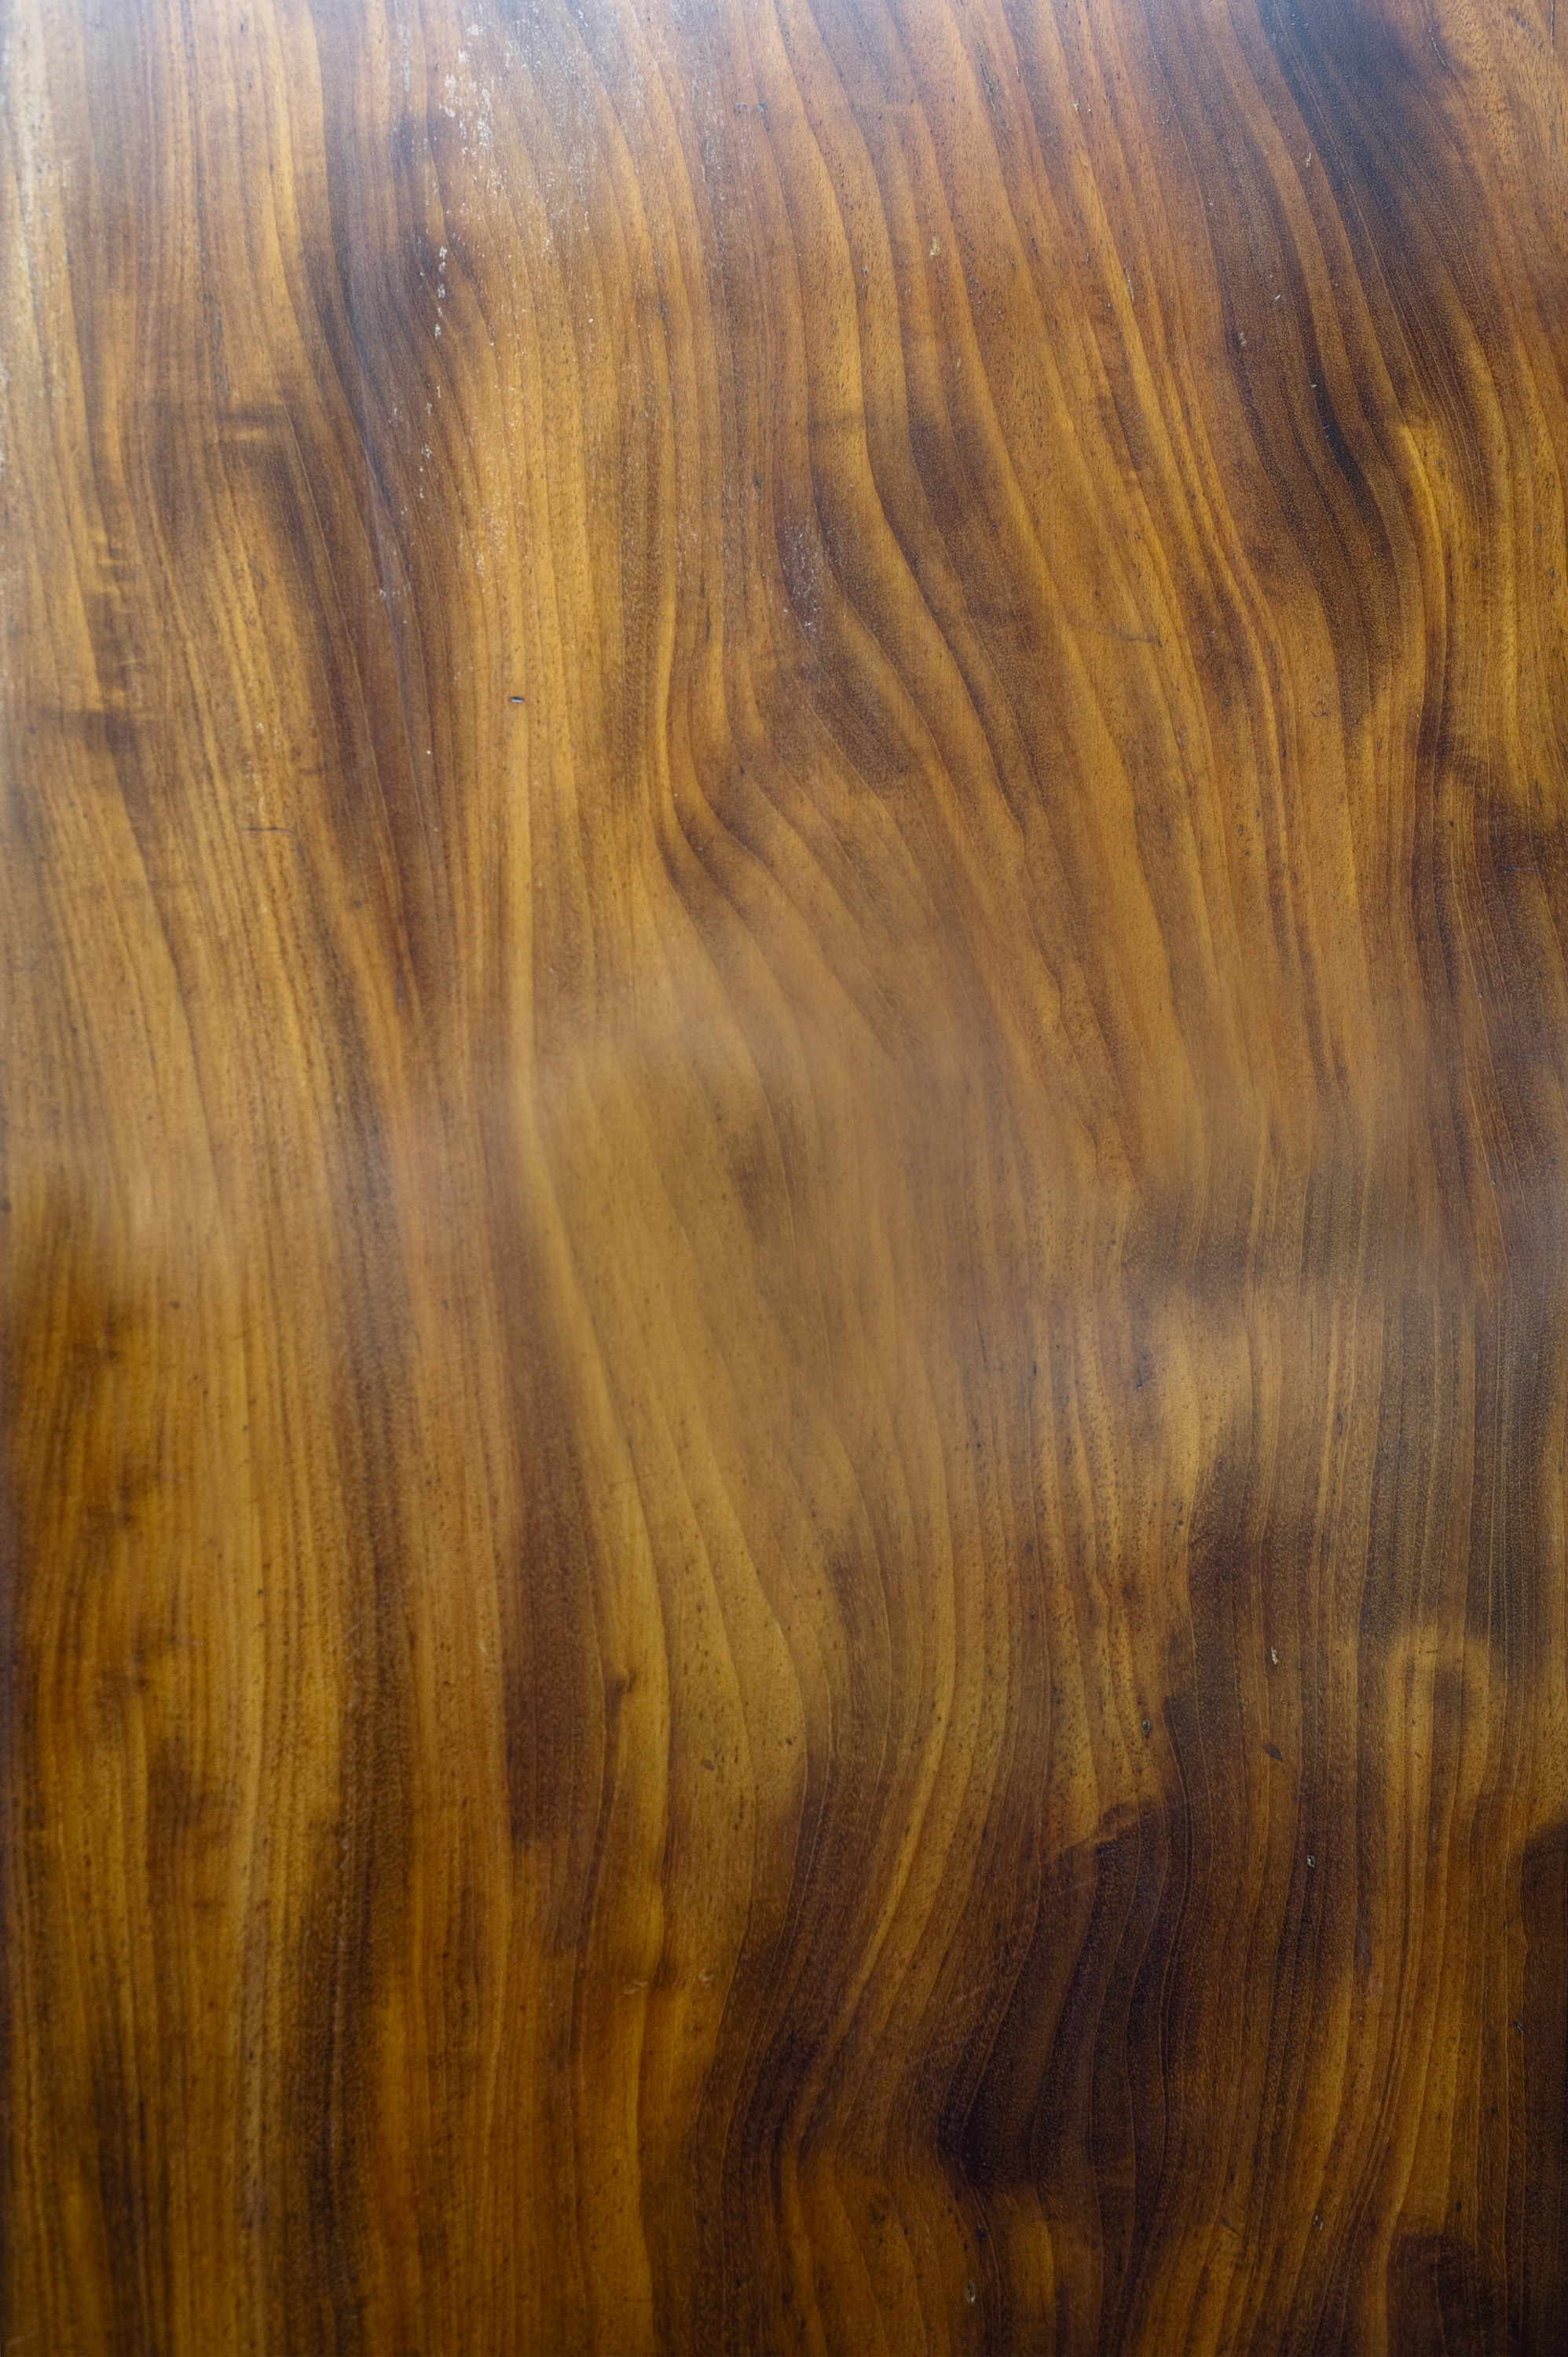 Free image of polished wood surface